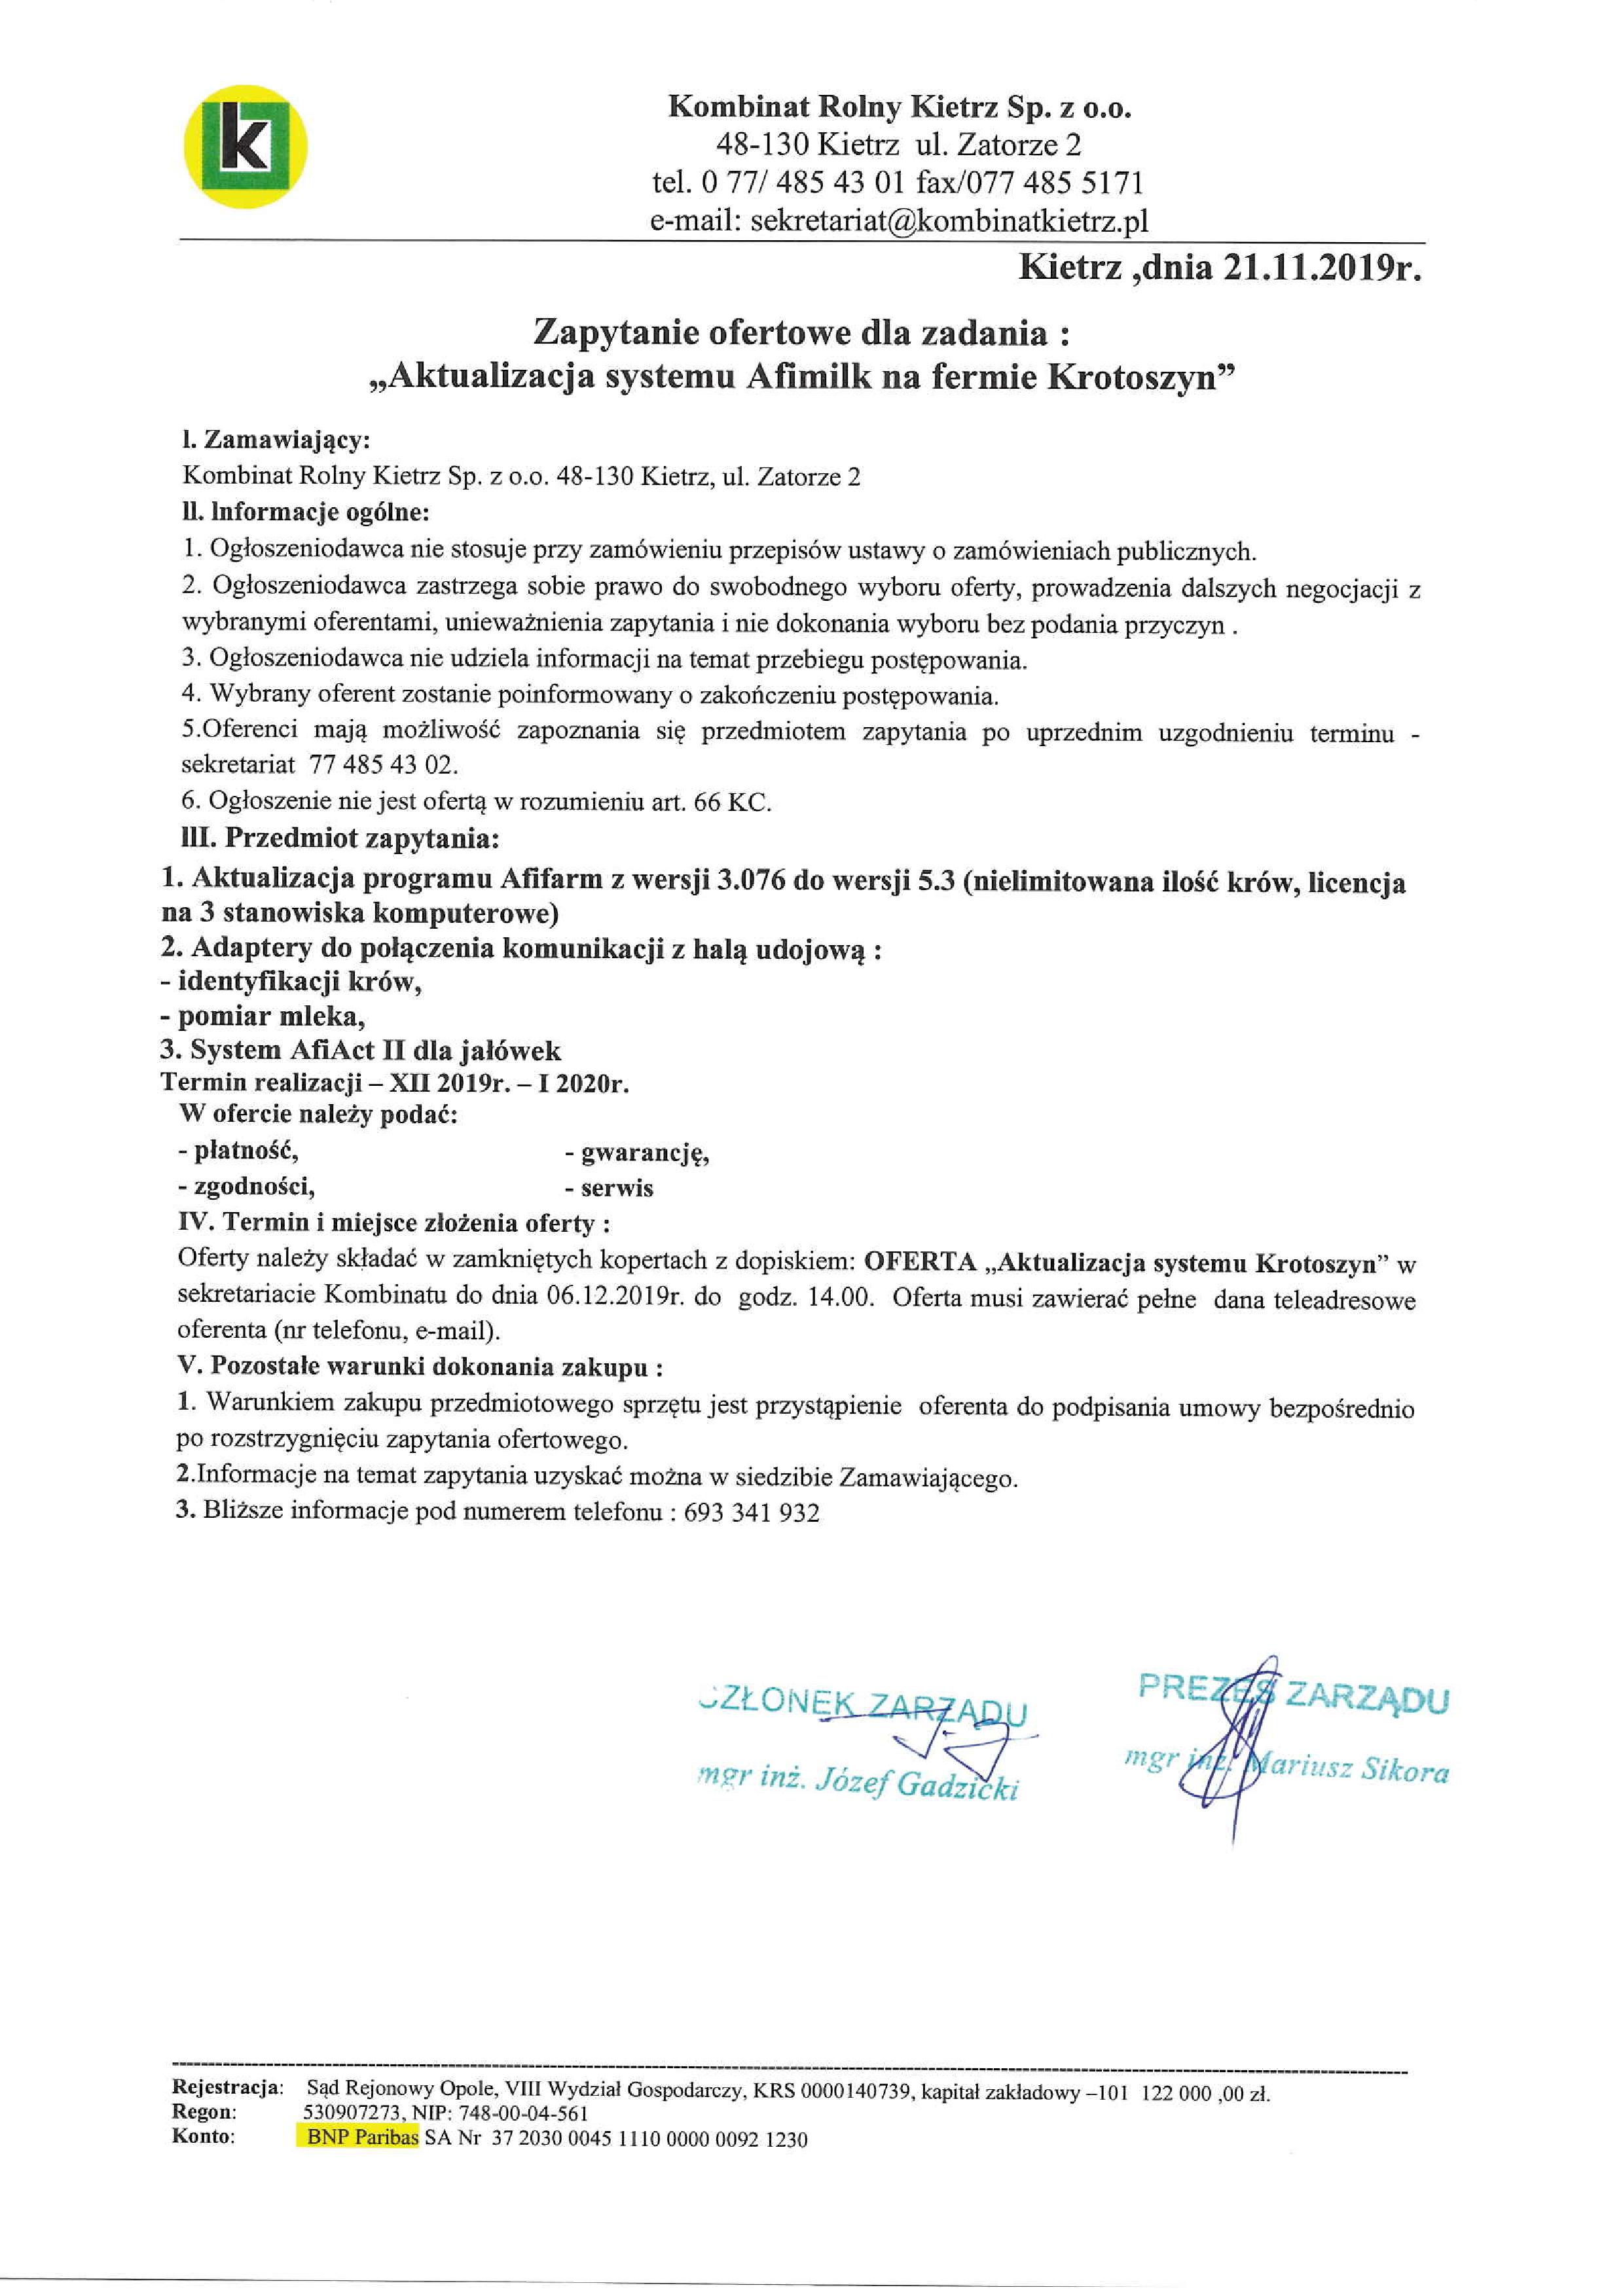 krkietrzsekretariatgmailcom 1-page-001jpg